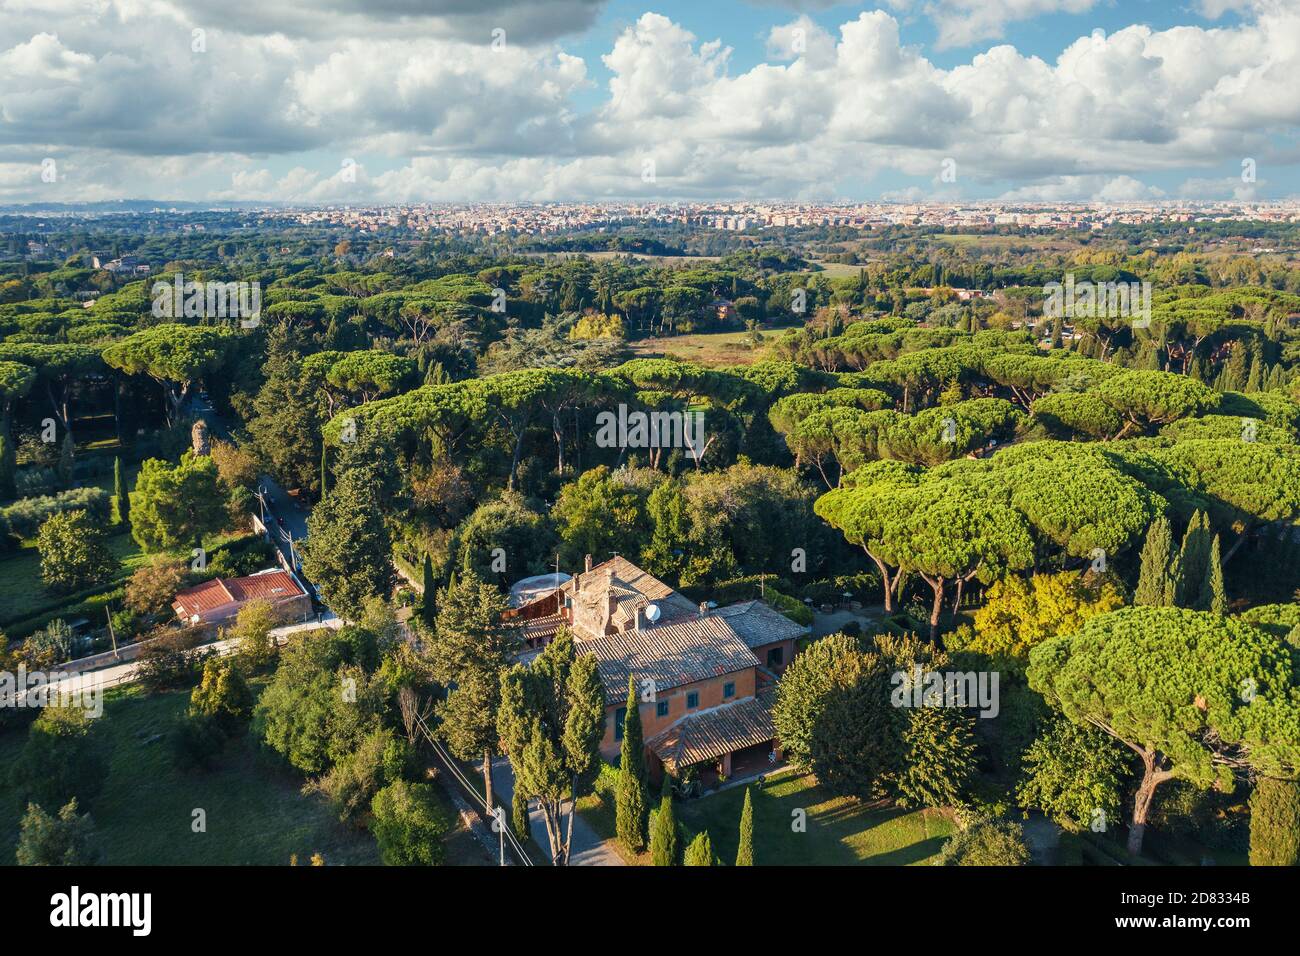 Parc verdoyant et prairies de via Appia Antica à Rome, Italie. Vue aérienne du paysage naturel de l'Europe antique. Banque D'Images